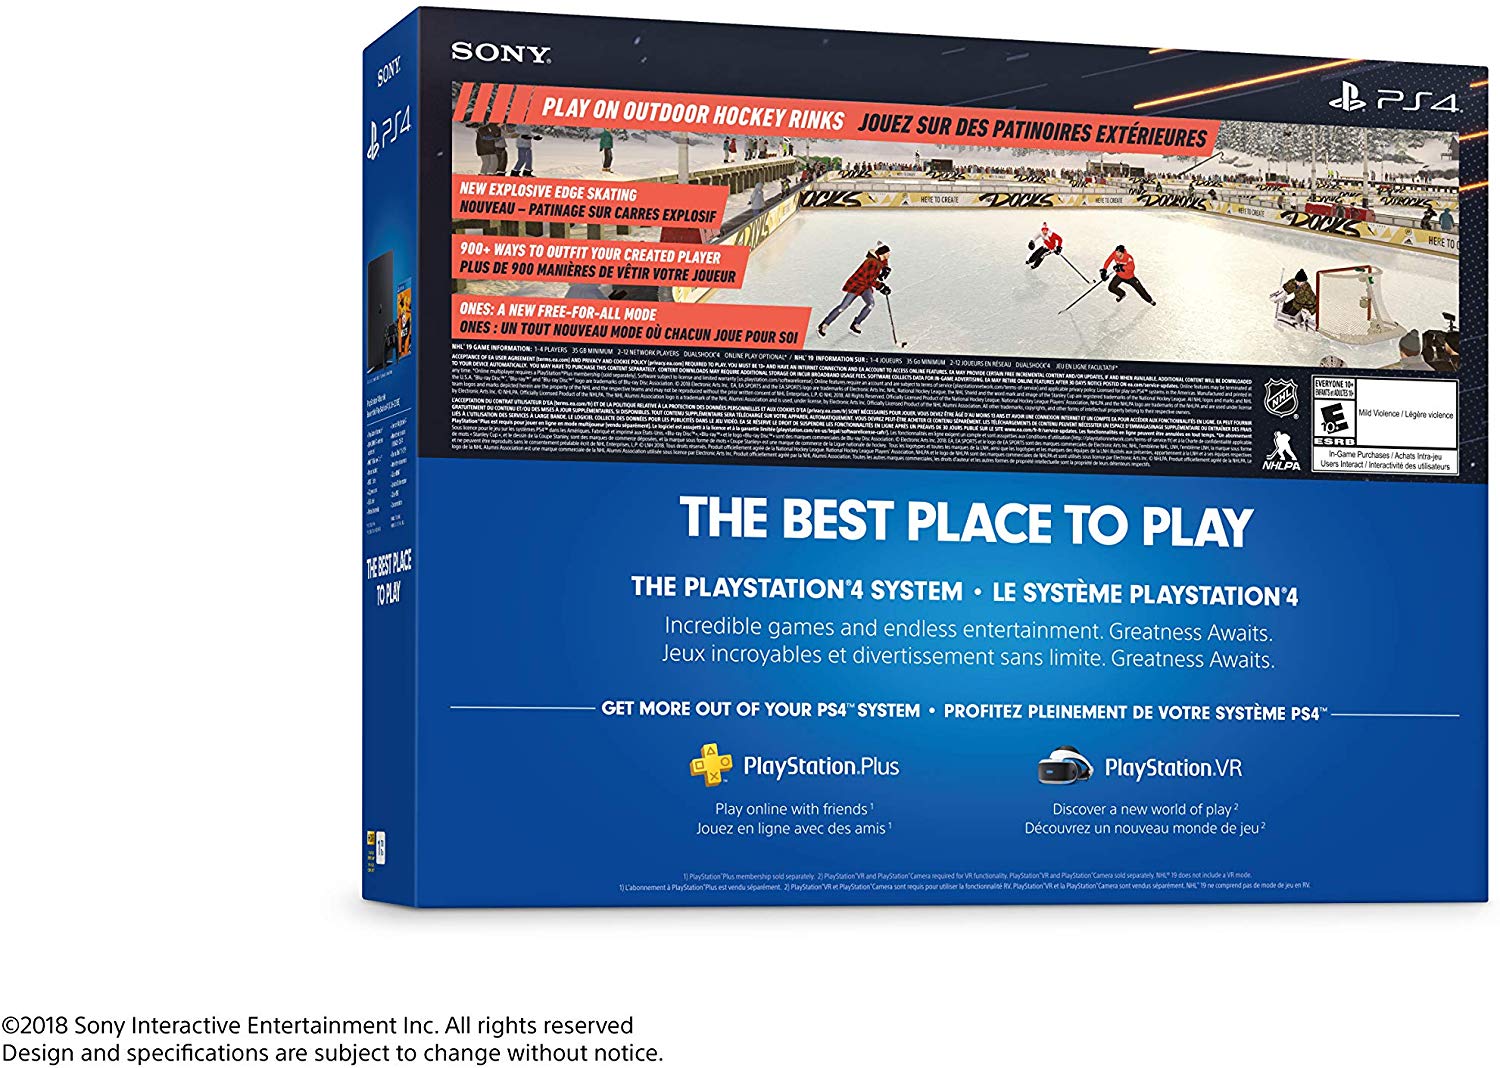 Sony PlayStation 4 1TB Slim - NHL 19 Bundle Edition Consoles Sony   